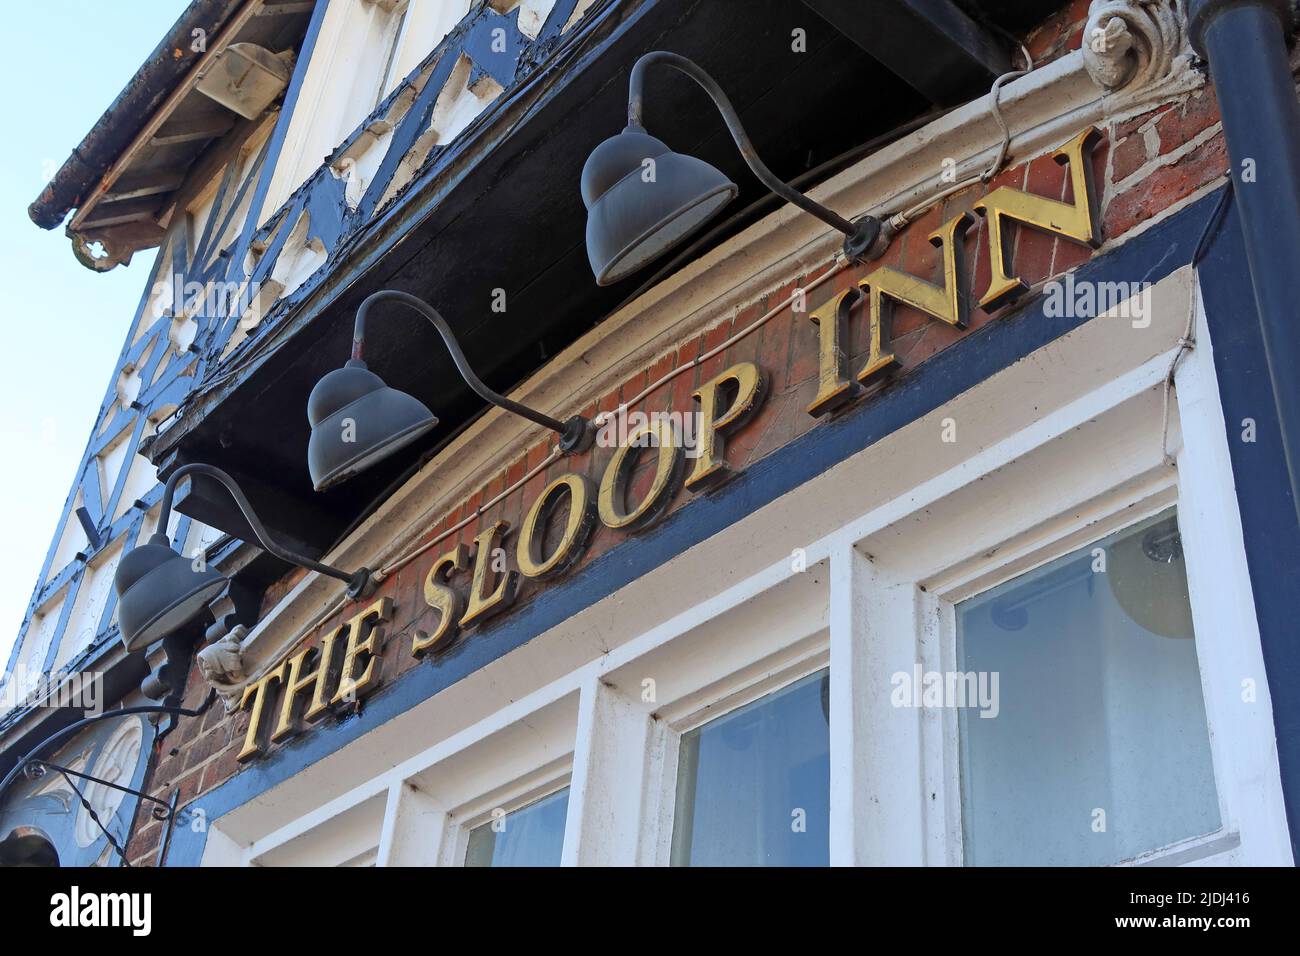 The Sloop Inn, 308-310 Old Liverpool Rd, Warrington, Cheshire, Angleterre, Royaume-Uni, WA5 1DP - extérieur, abandonné à l'été 2022 Banque D'Images